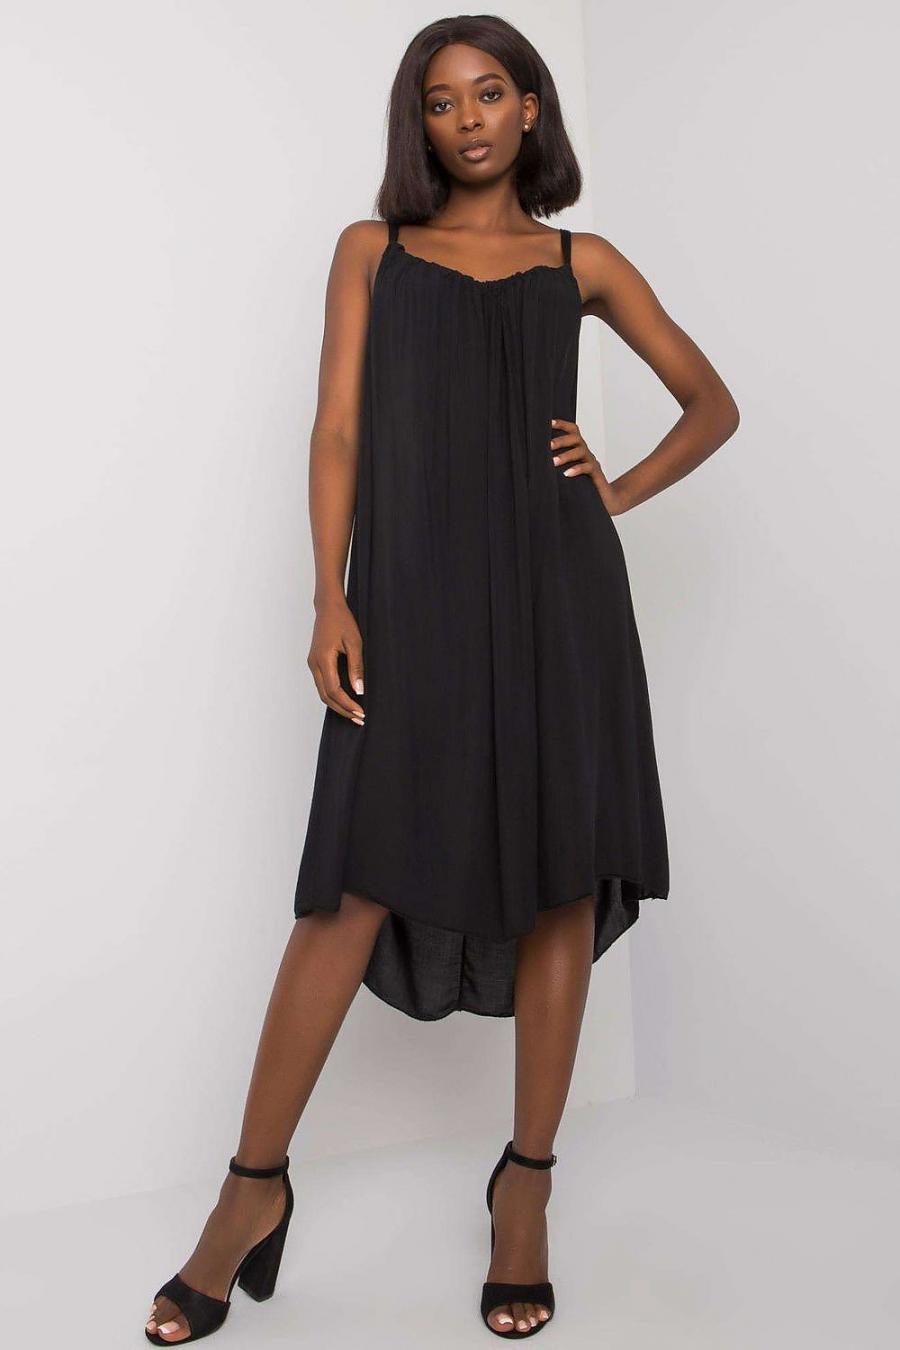 Ostatní značky šaty dámské 165036 - černá - velikost L